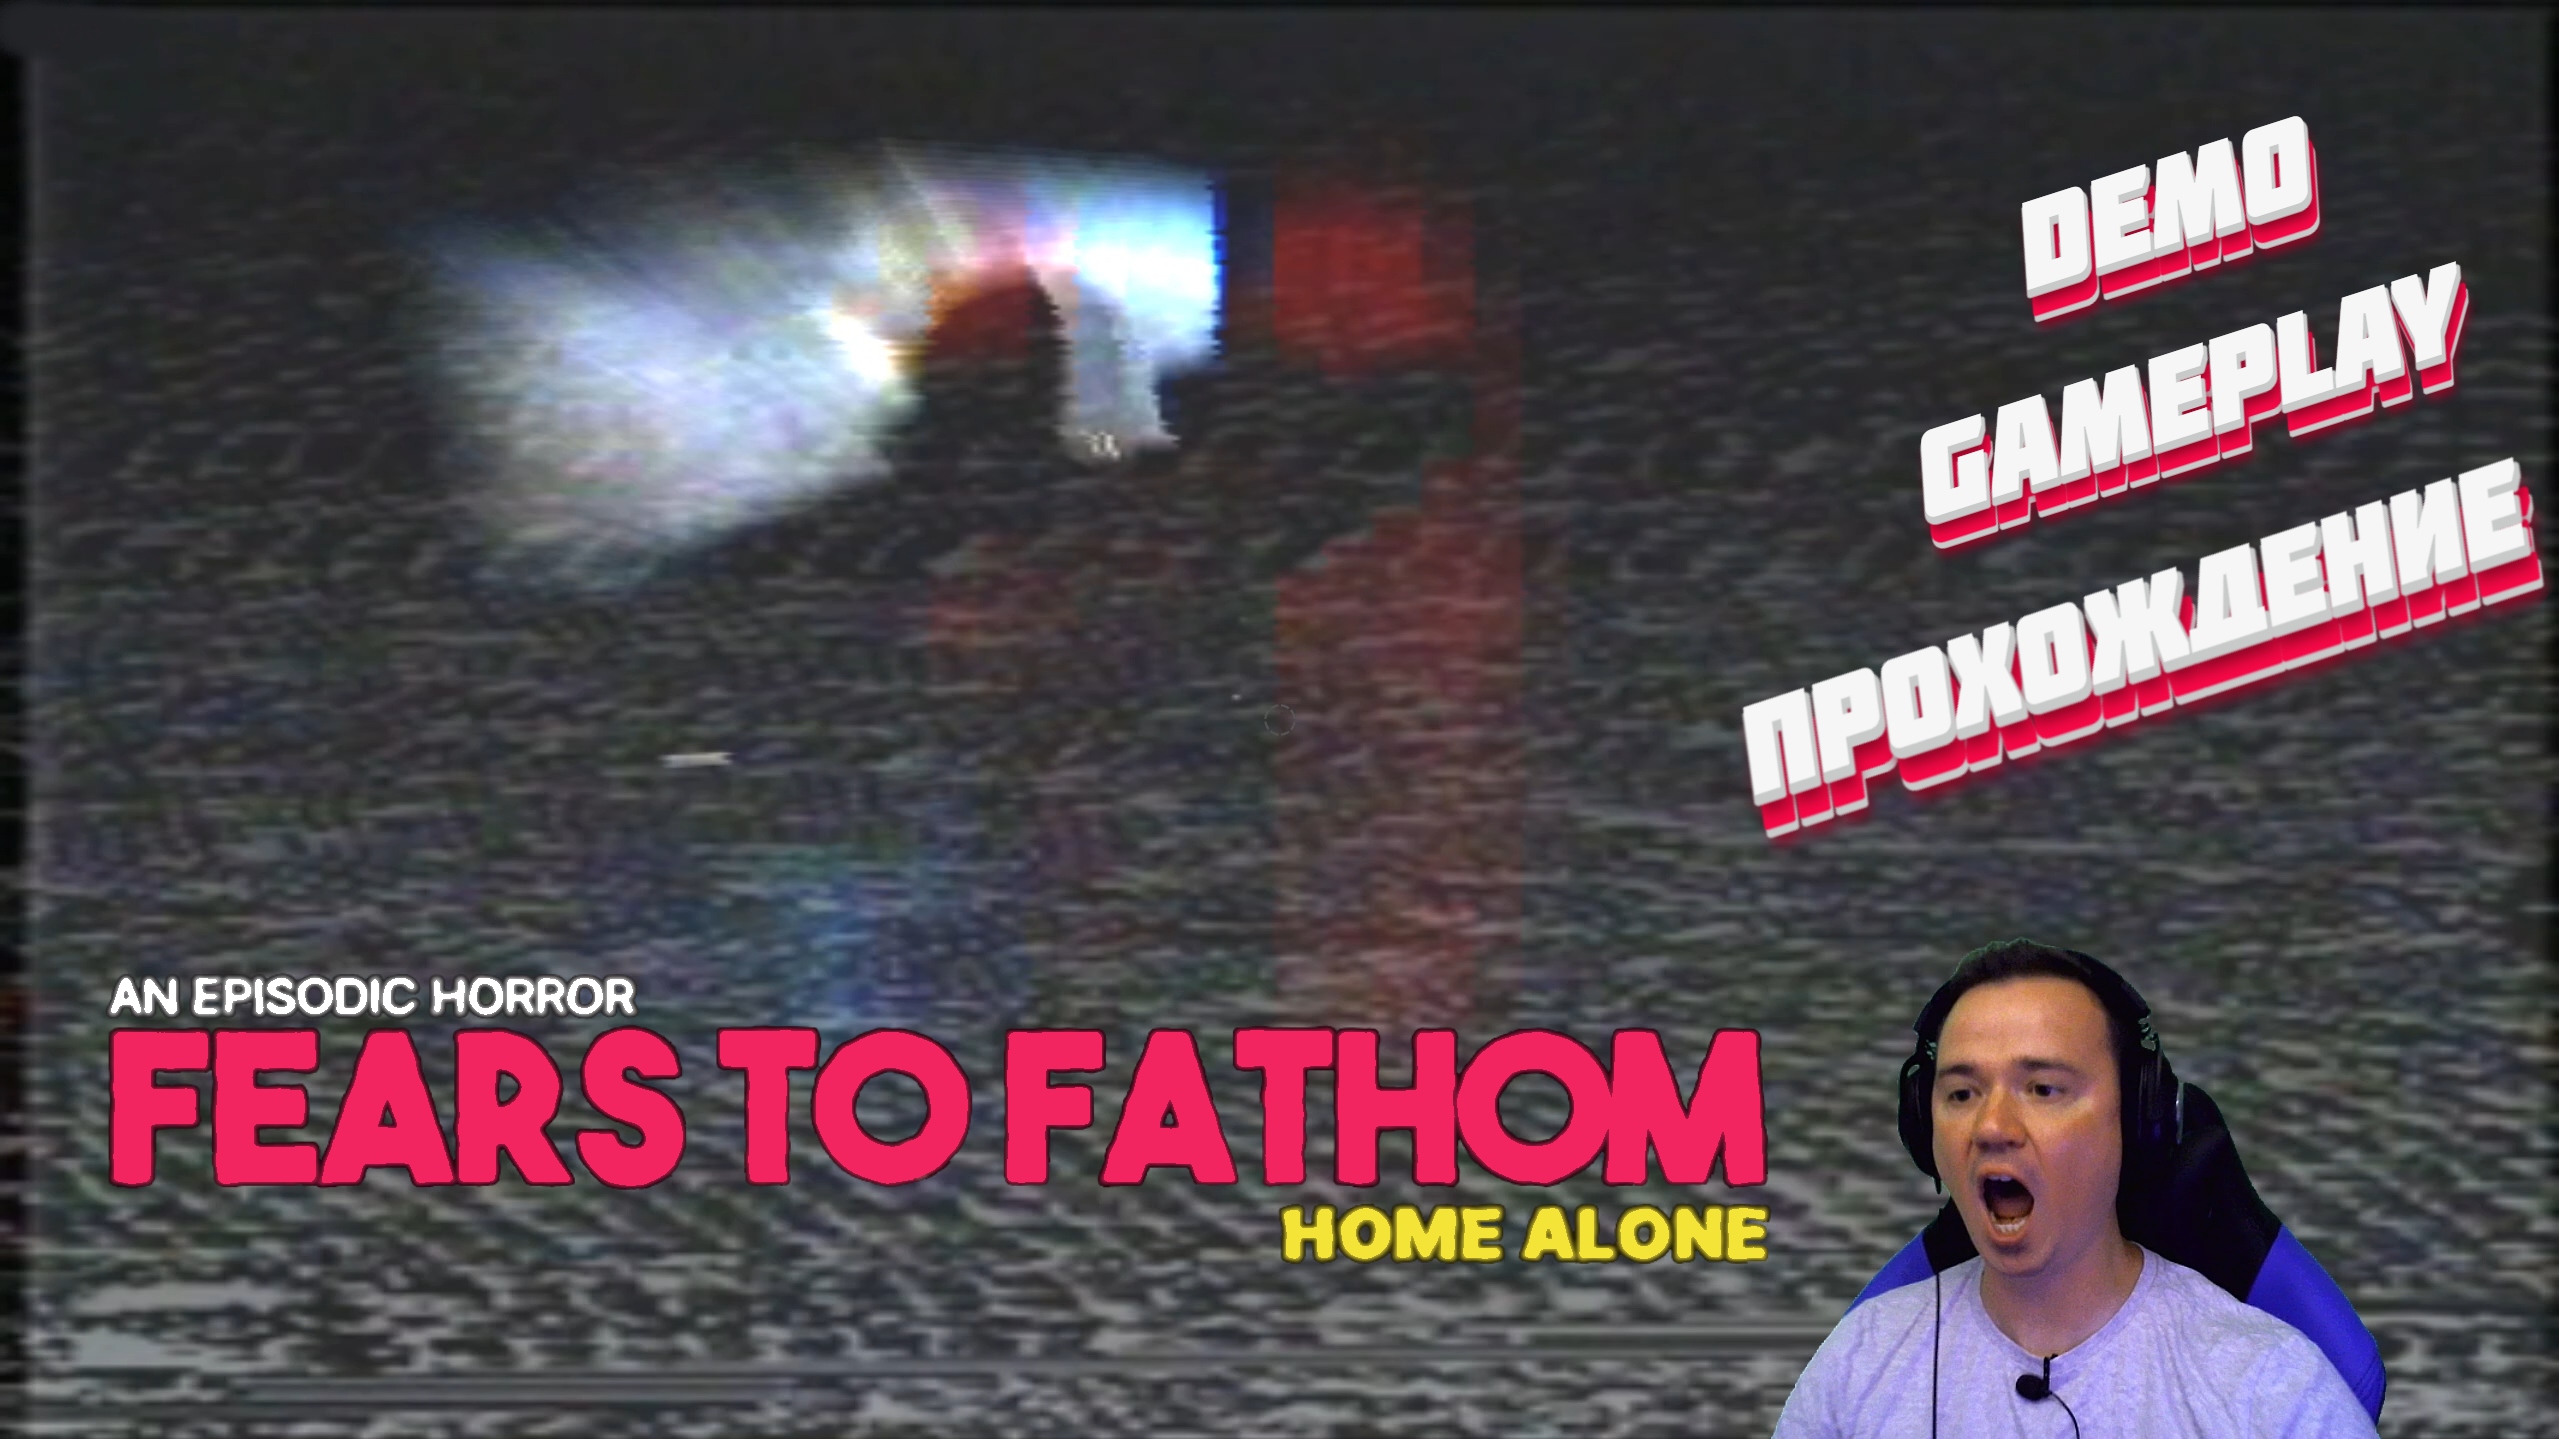 СЛАБОНЕРВНЫМ НЕ СМОТРЕТЬ ► Fears to Fathom - Home Alone gameplay